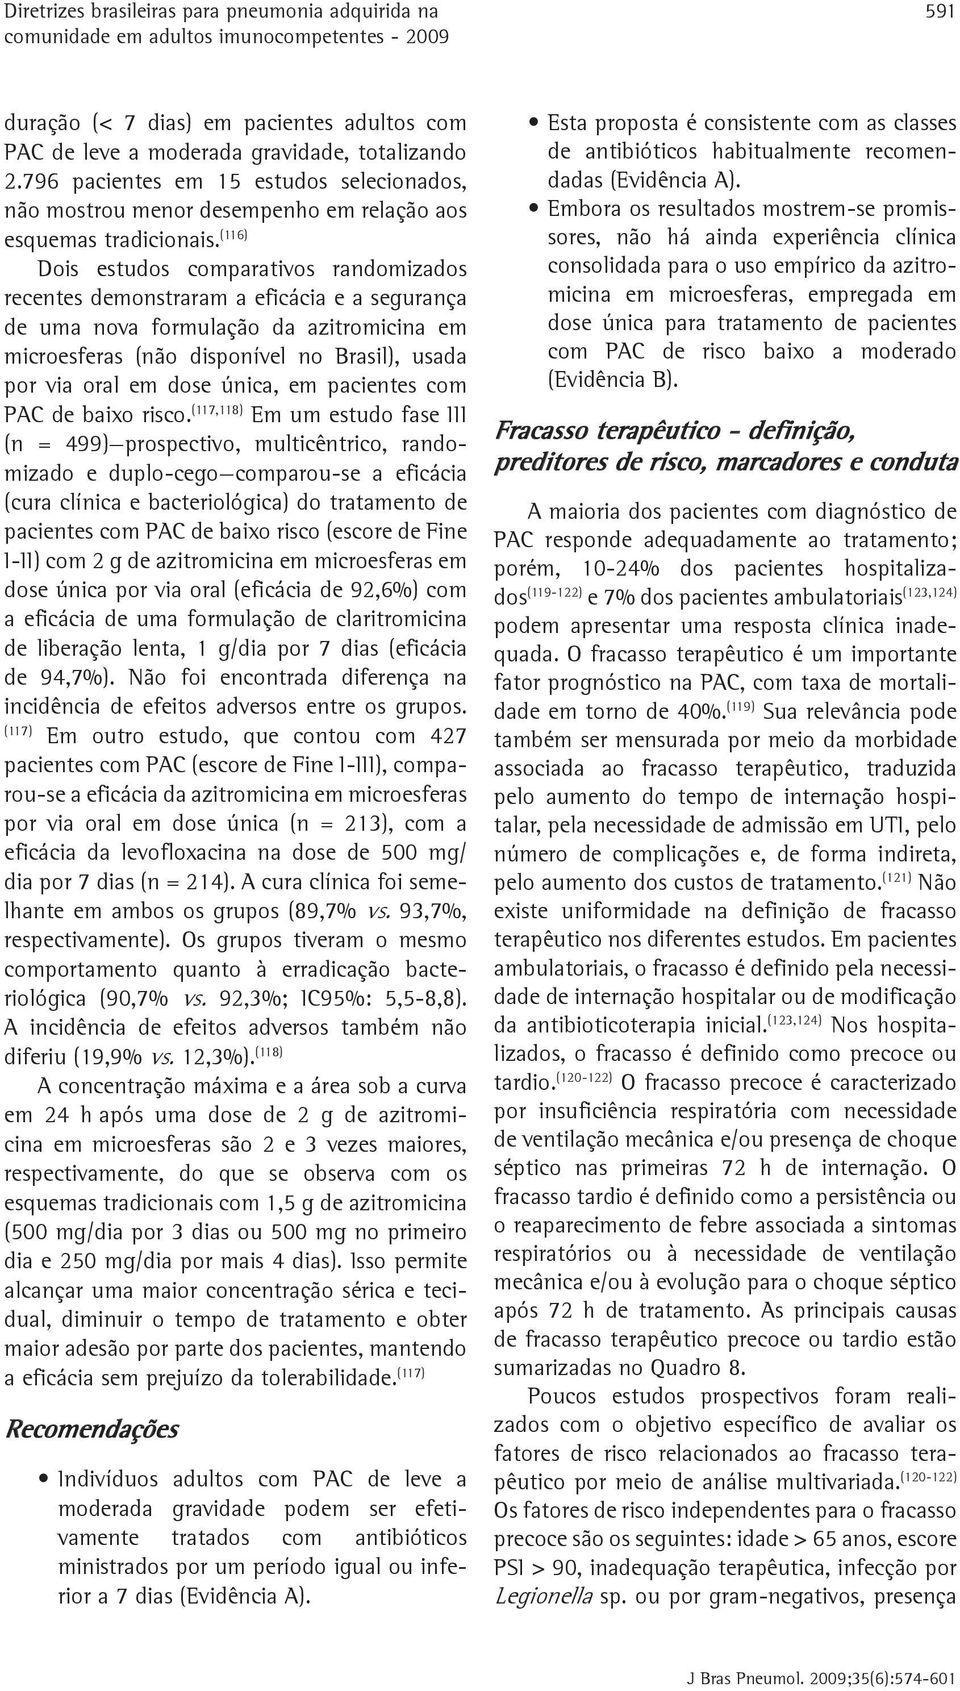 (116) Dois estudos comparativos randomizados recentes demonstraram a eficácia e a segurança de uma nova formulação da azitromicina em microesferas (não disponível no Brasil), usada por via oral em